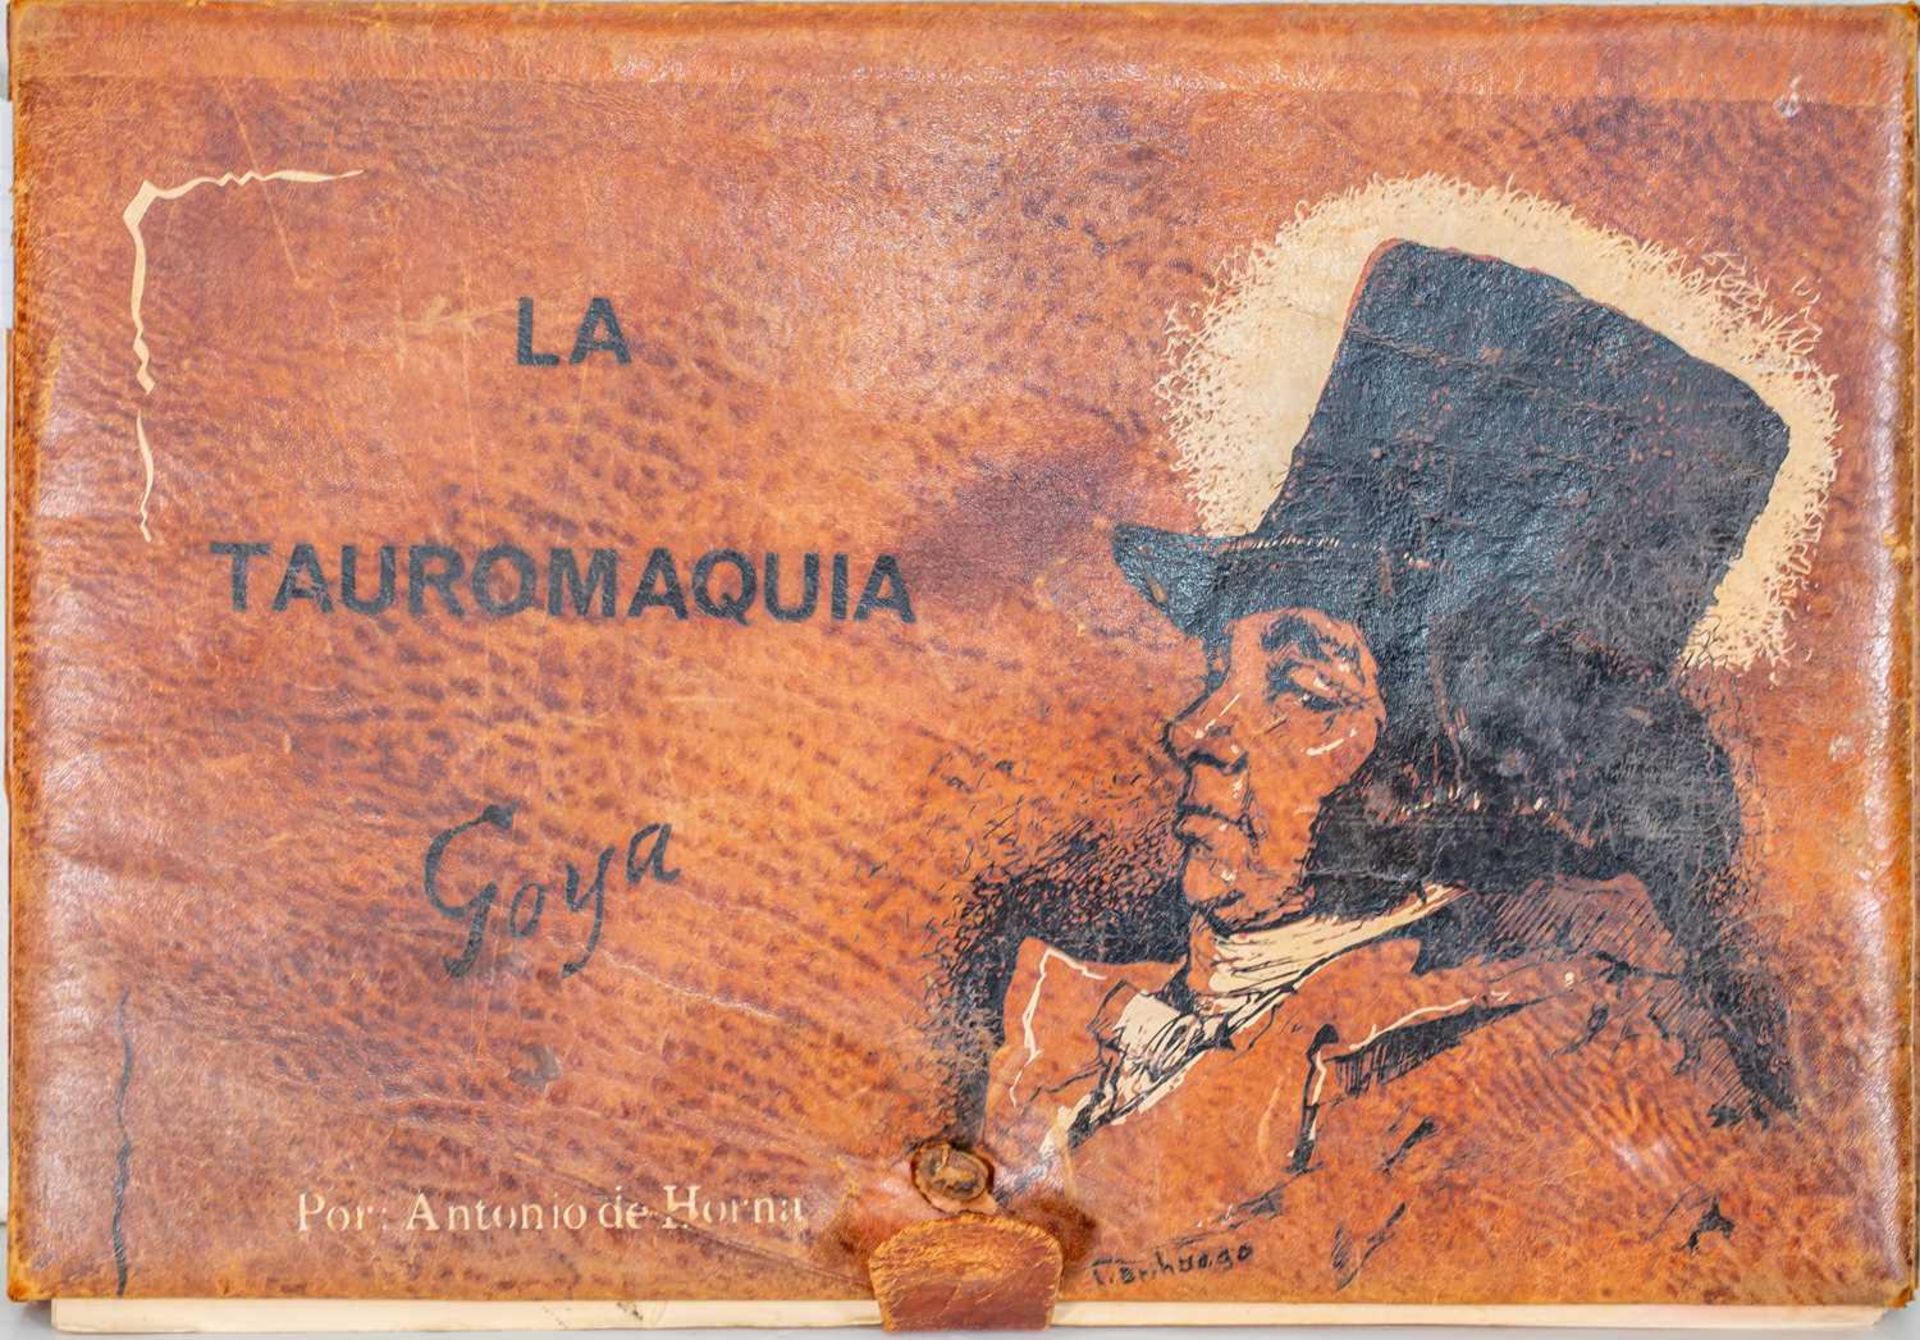 (Book) Antonio de Horna 'La Tauromaquia de Goya', published by Biblioteca Nacional de Madrid 1970,